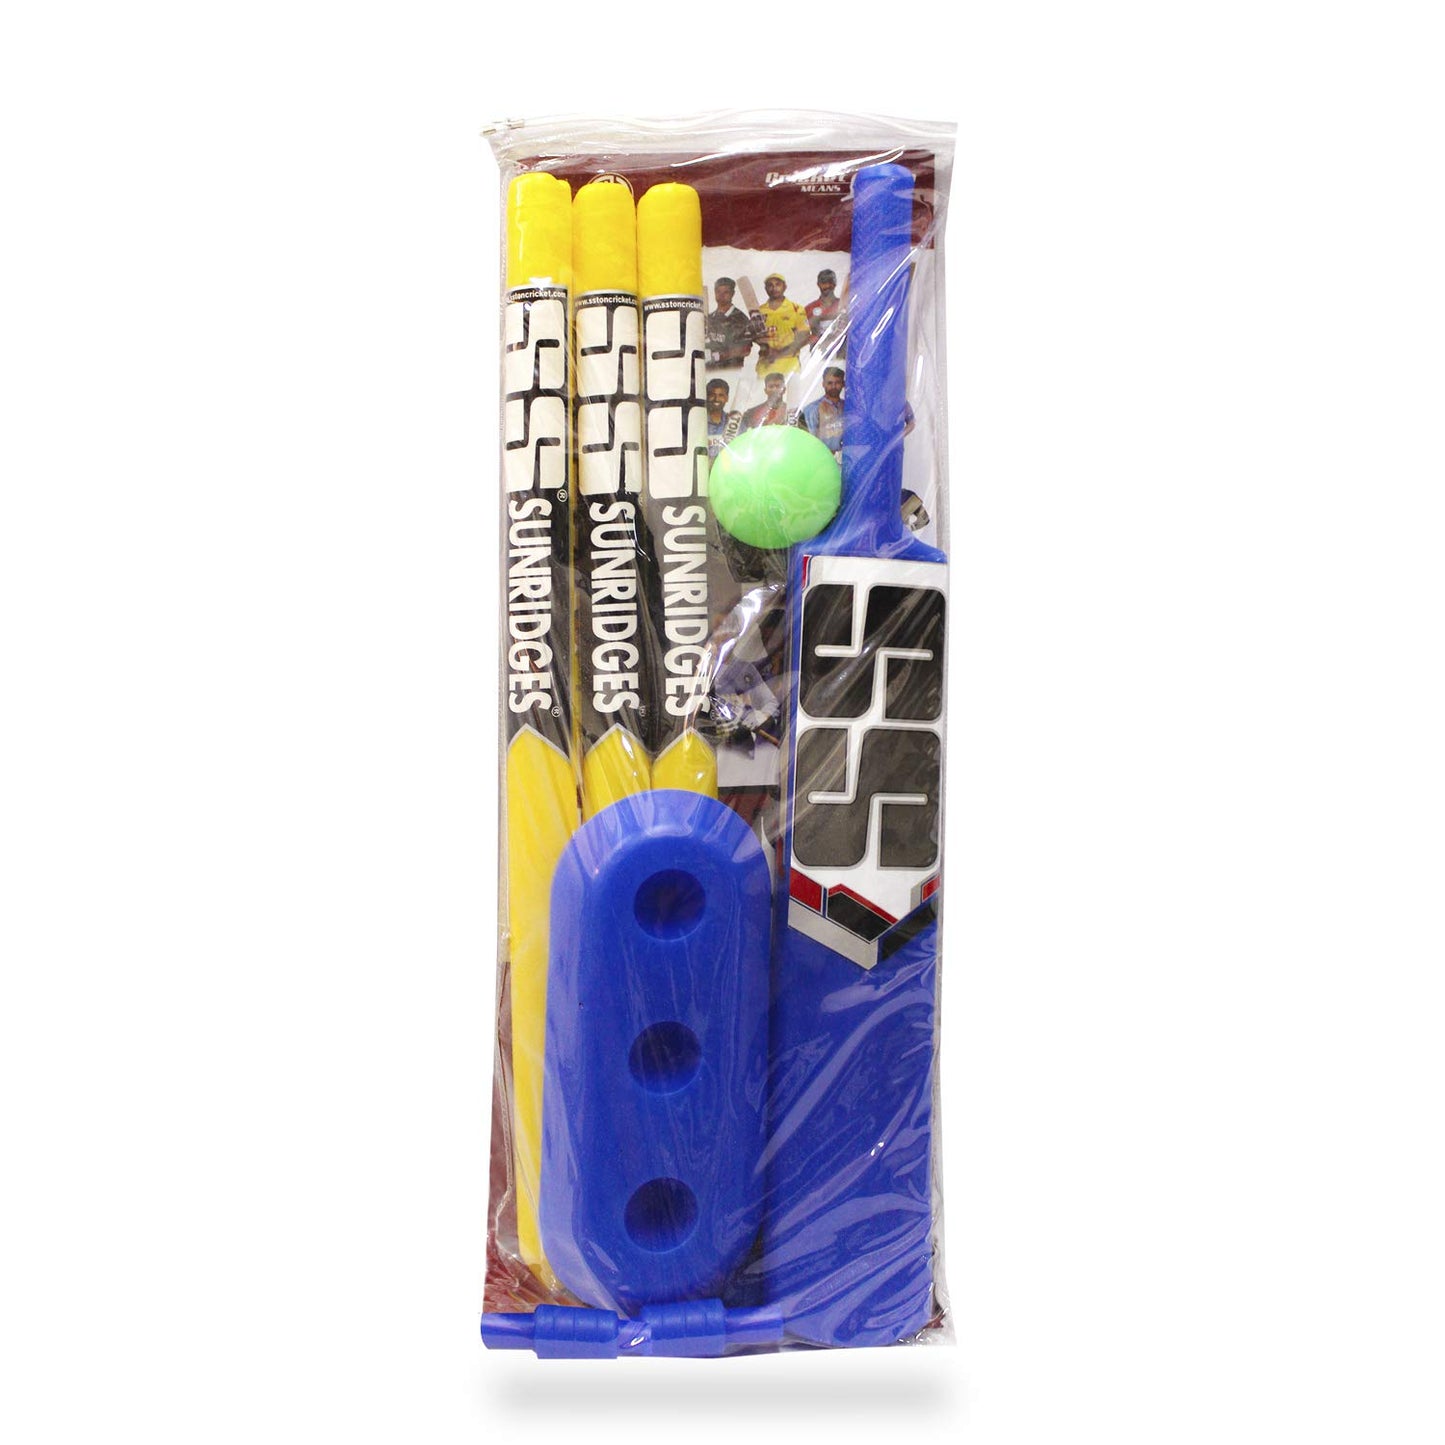 SS Junior Plastic Cricket Kit Set for Beginners